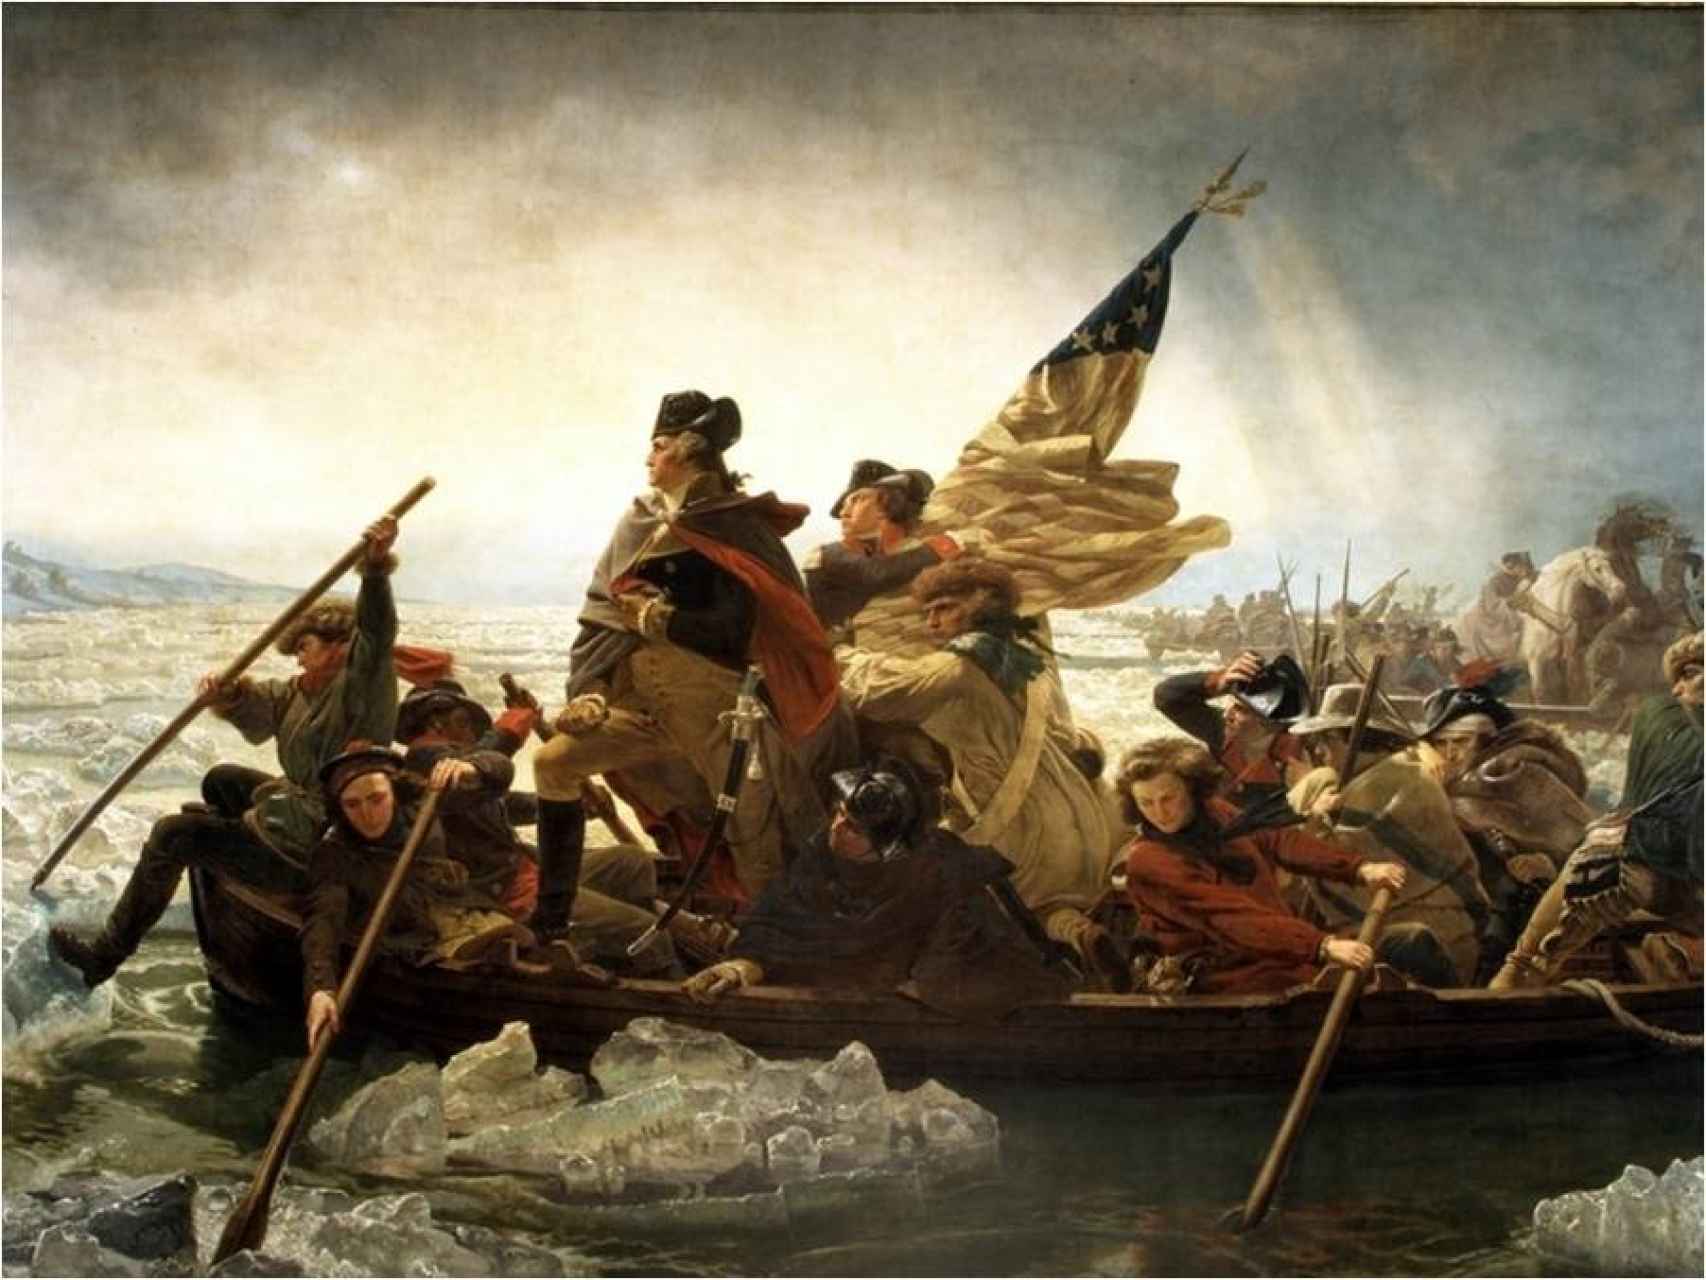 Washington cruzando el río Delaware, del pintor Emmanuel Leutze.